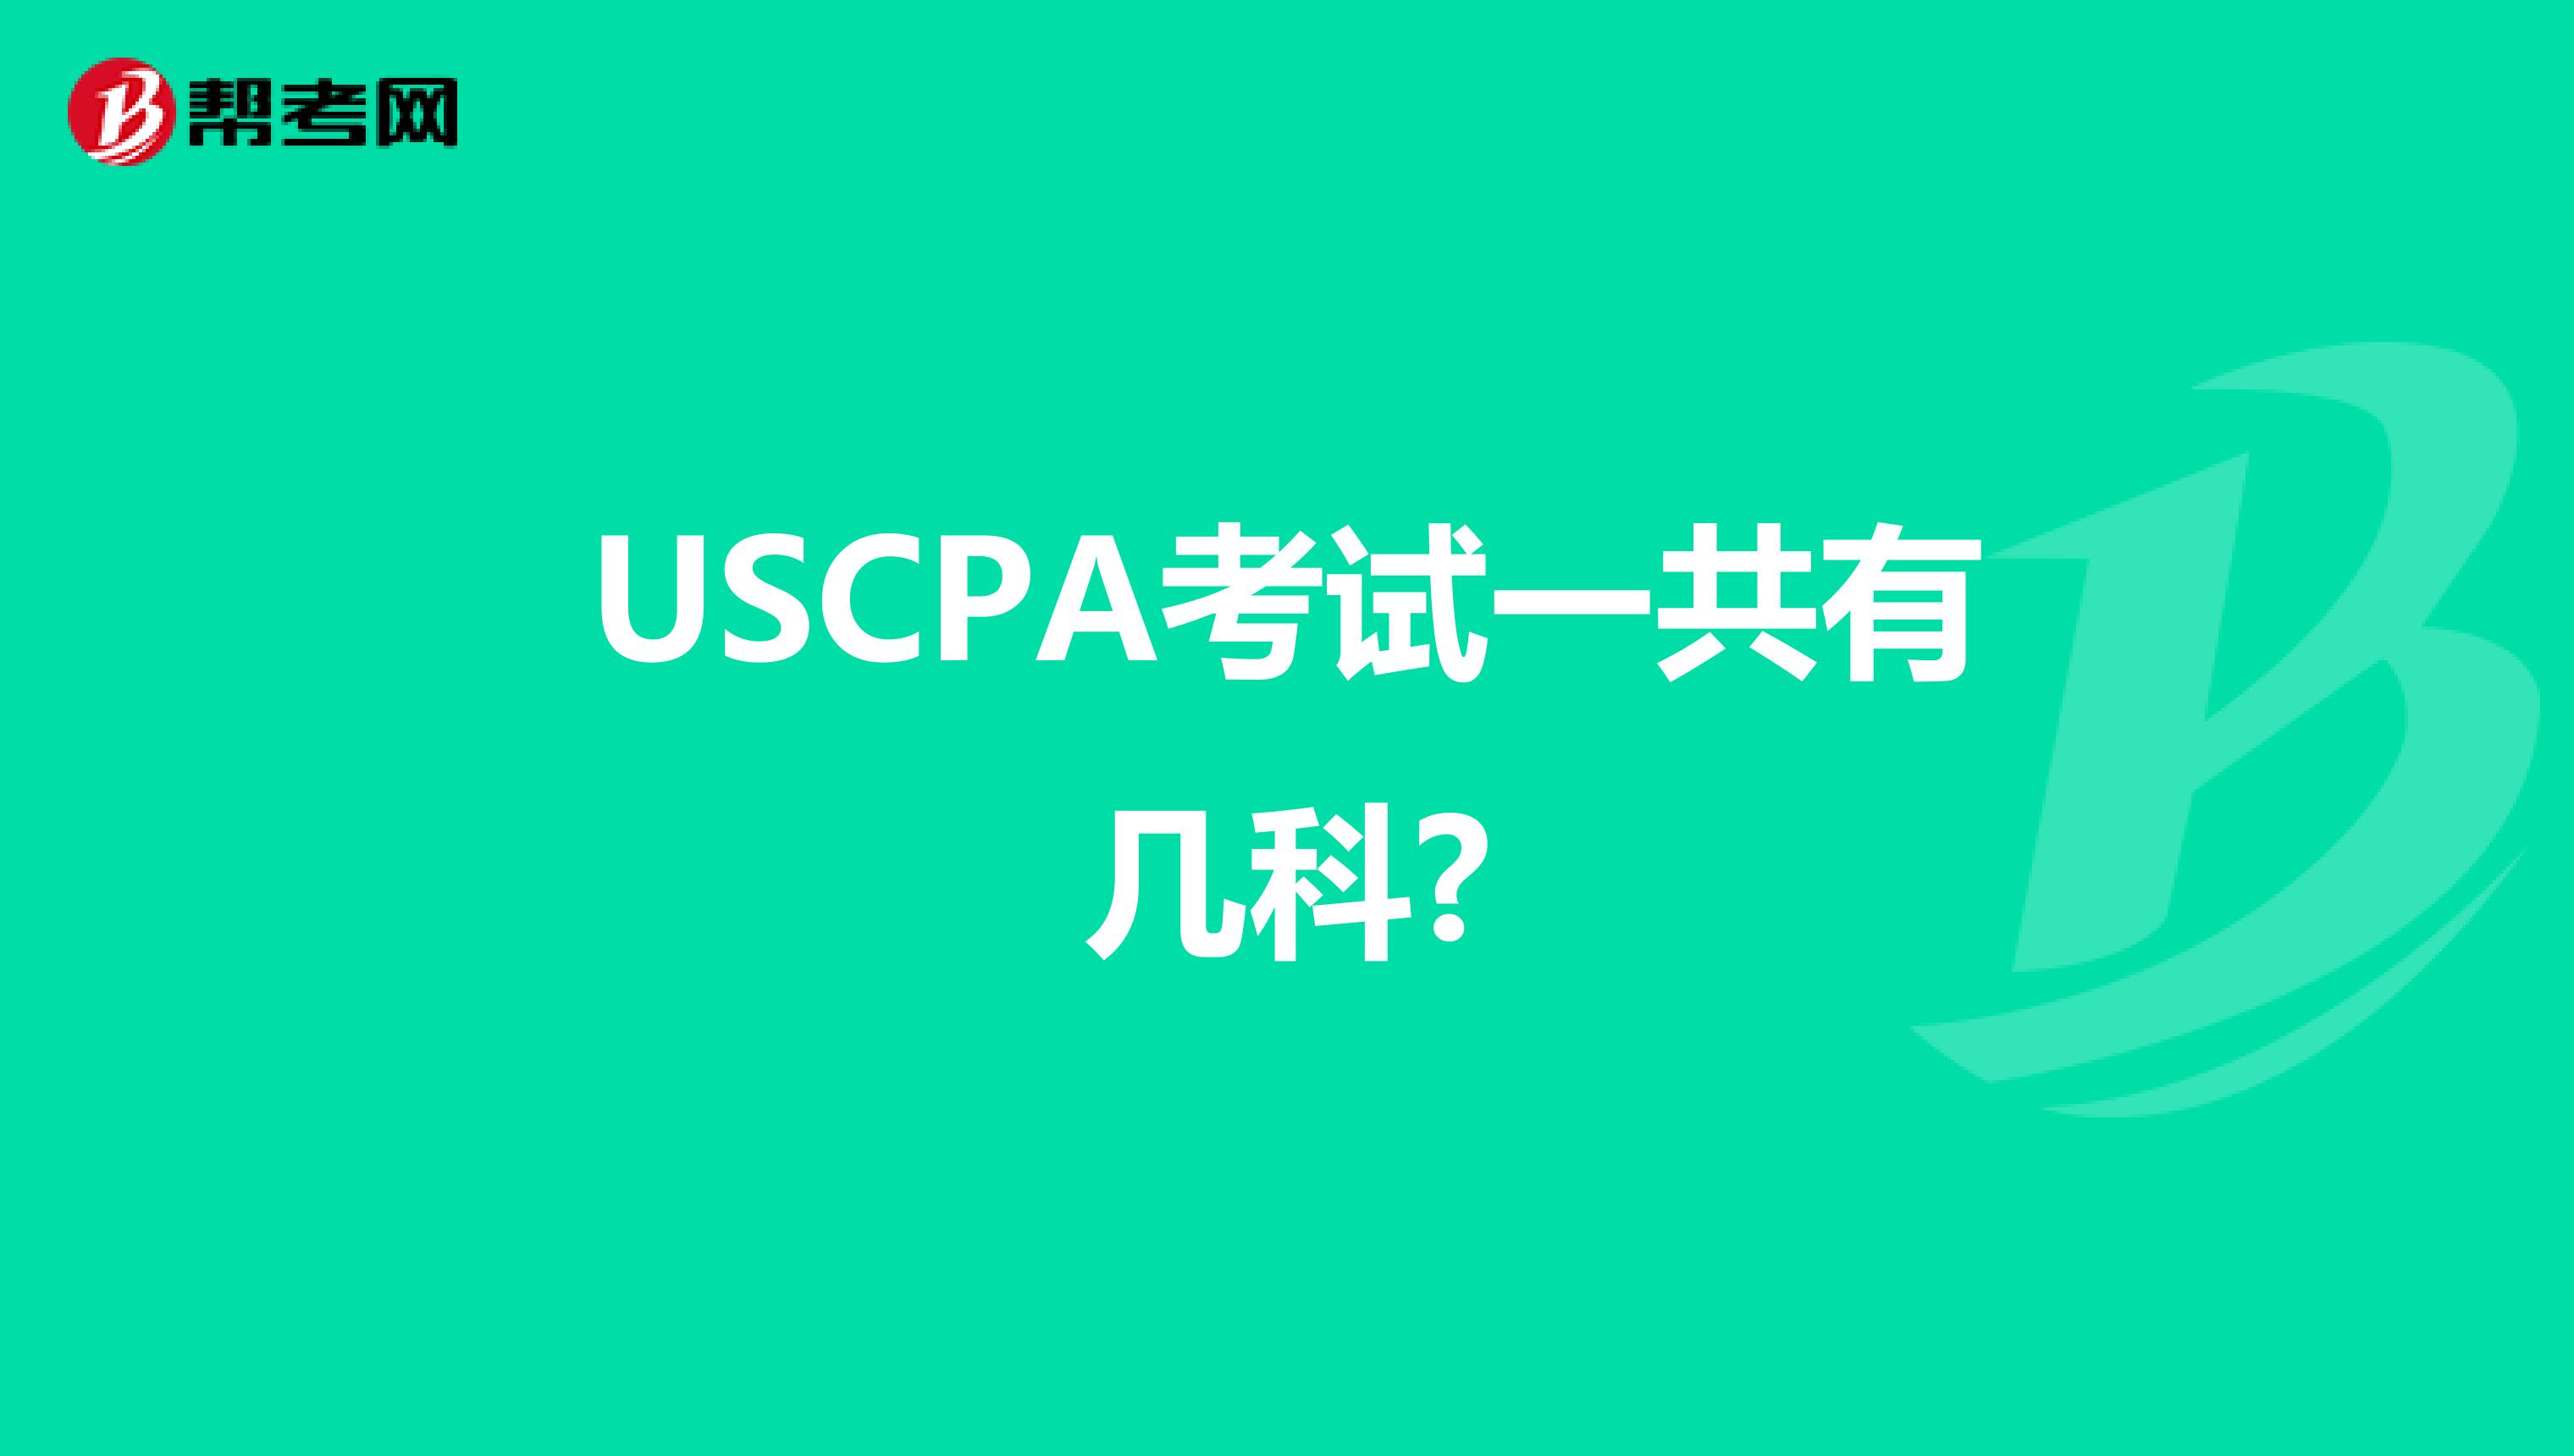 USCPA考试一共有几科?